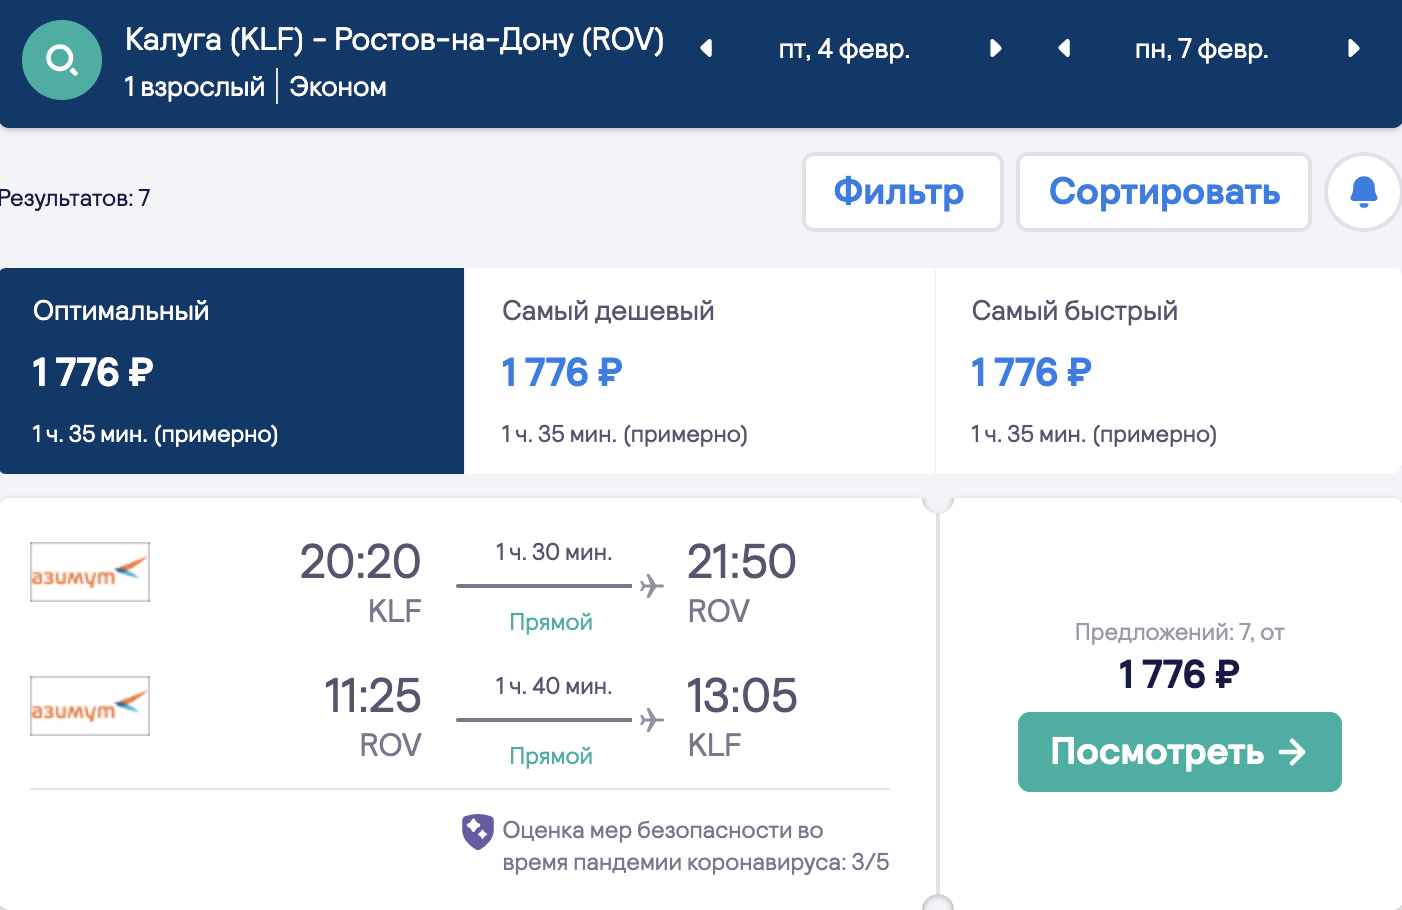 Uma seleção de voos baratos de 10 cidades na Rússia para Rostov-on-Don a partir de 1700₽ ida e volta